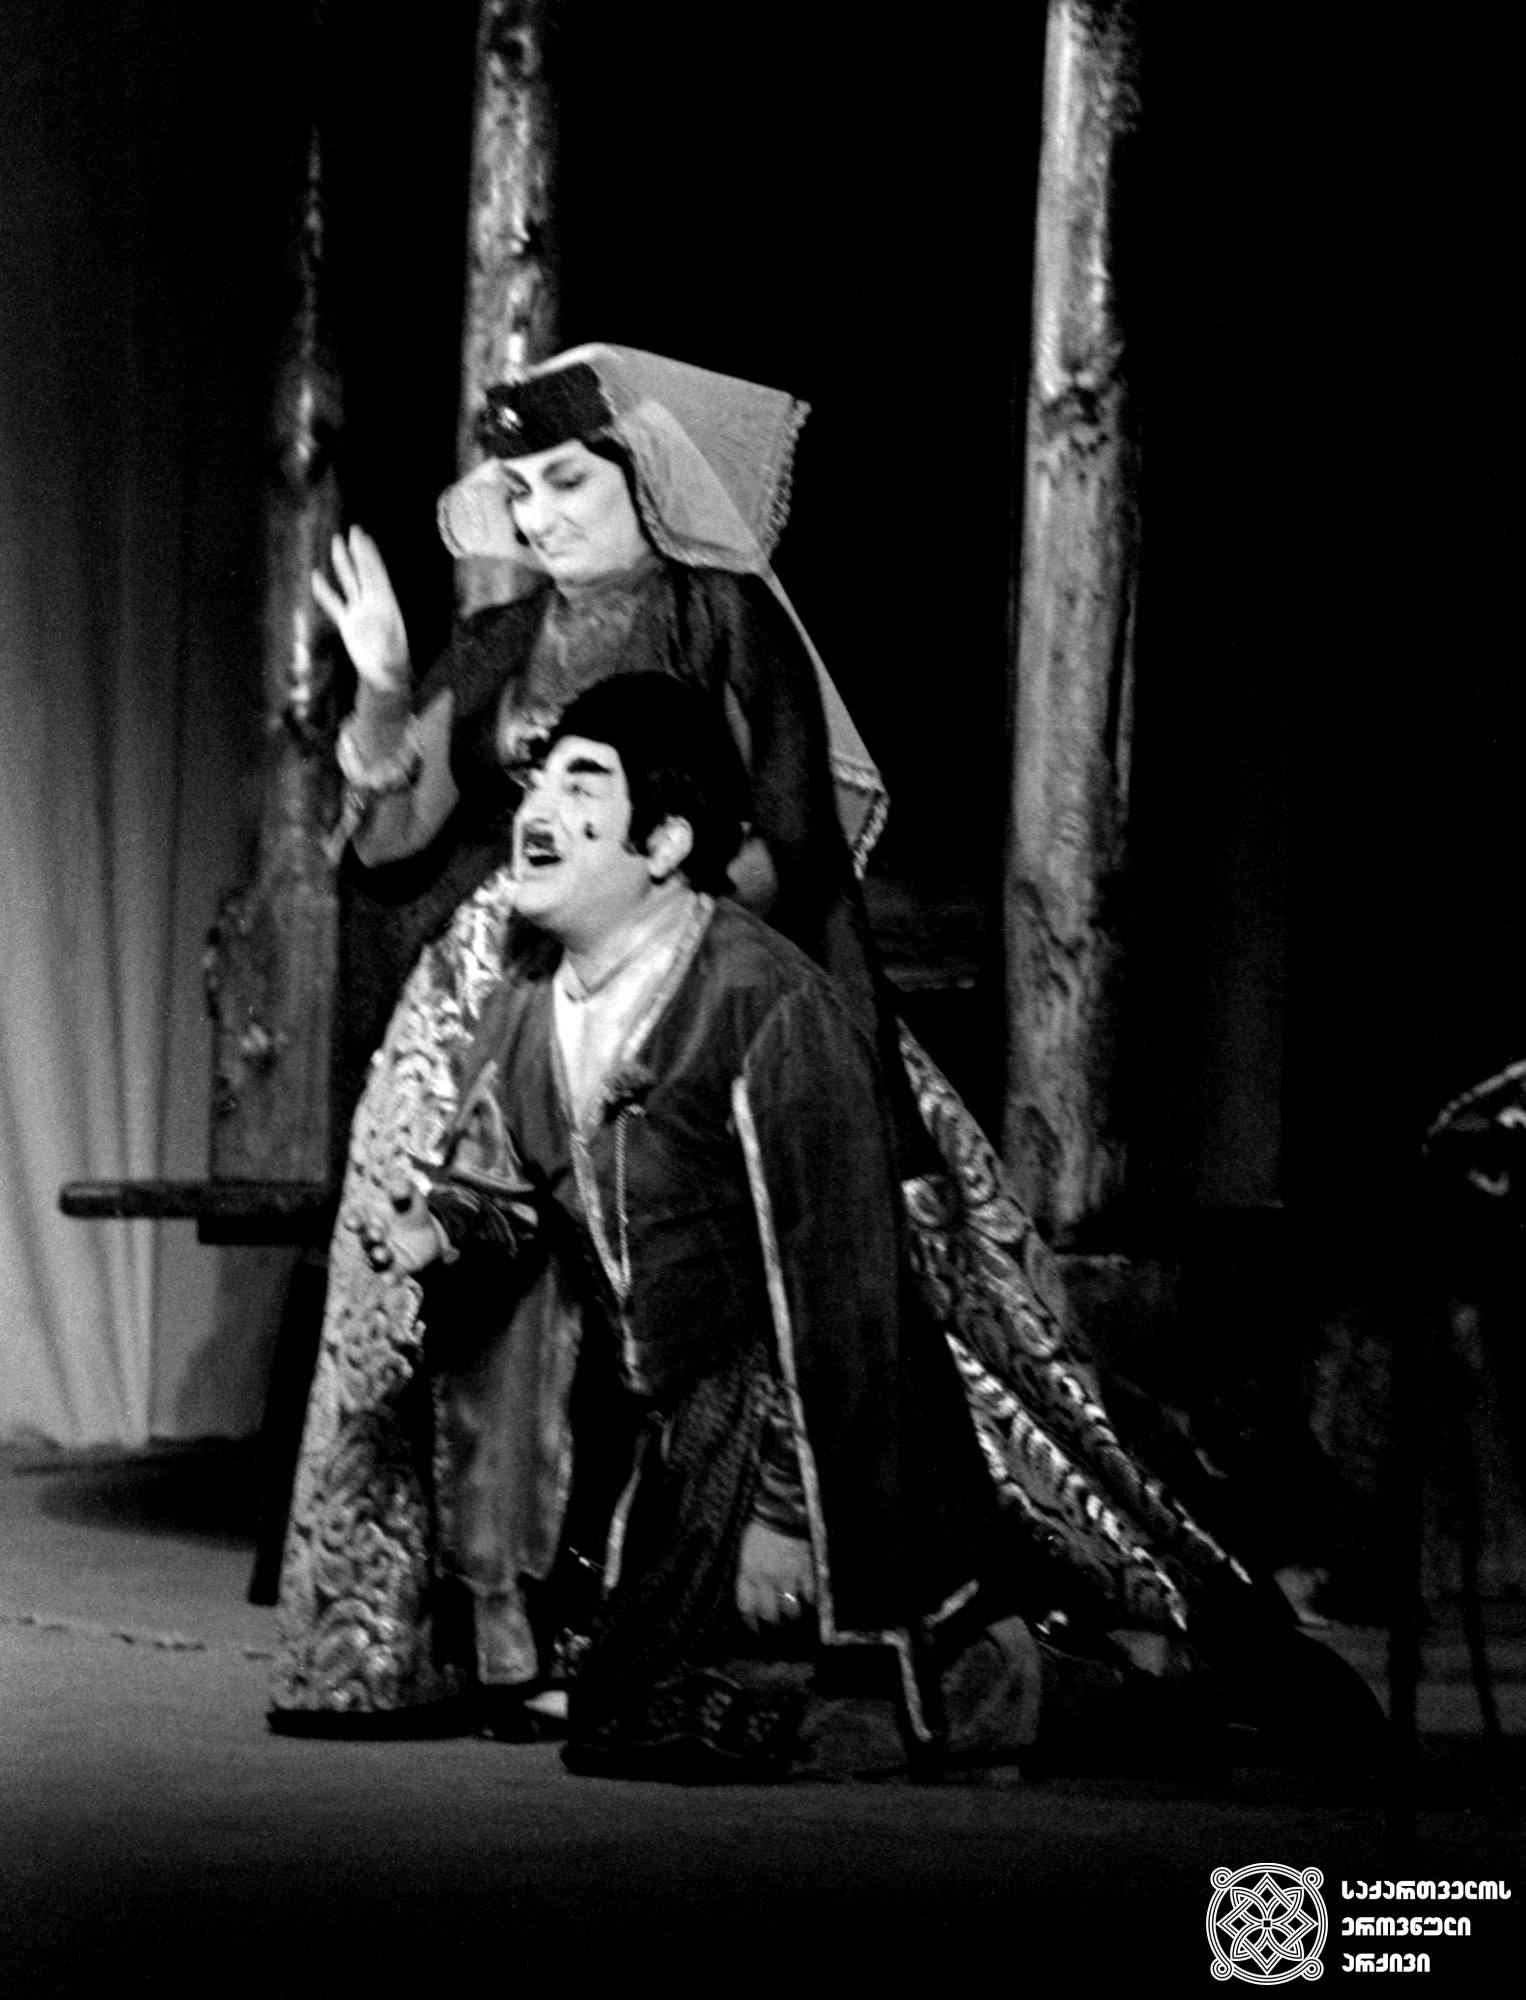 სცენა სპექტაკლიდან „ხანუმა“, ხანუმა - სალომე ყანჩელი, აკოფა- რამაზ ჩხიკვაძე.
<br>1973 წელი.<br>
Scene from the play Khanuma. Salome Kancheli as Khanuma, Ramaz
Chkikvadze as Akopha, <br> 1973.